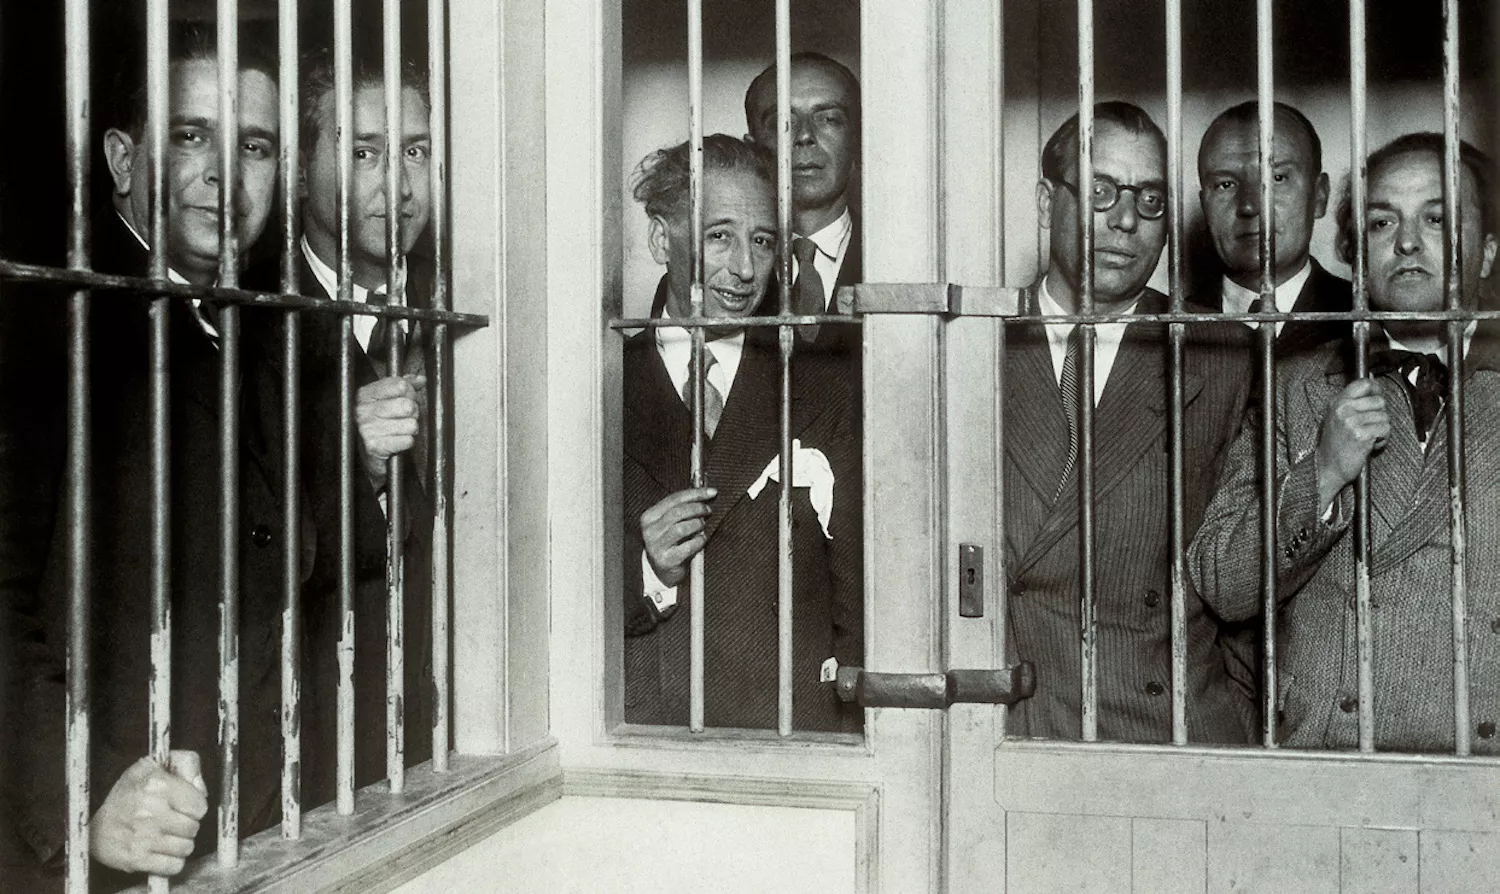 El president Companys i els seus consellers (Pere Mestres, Martí Esteve, Joan Lluhí, Joan Comorera, Martí Barrera i Ventura Gassol), a la presó Model de Barcelona, després dels fets d’Octubre del 1934